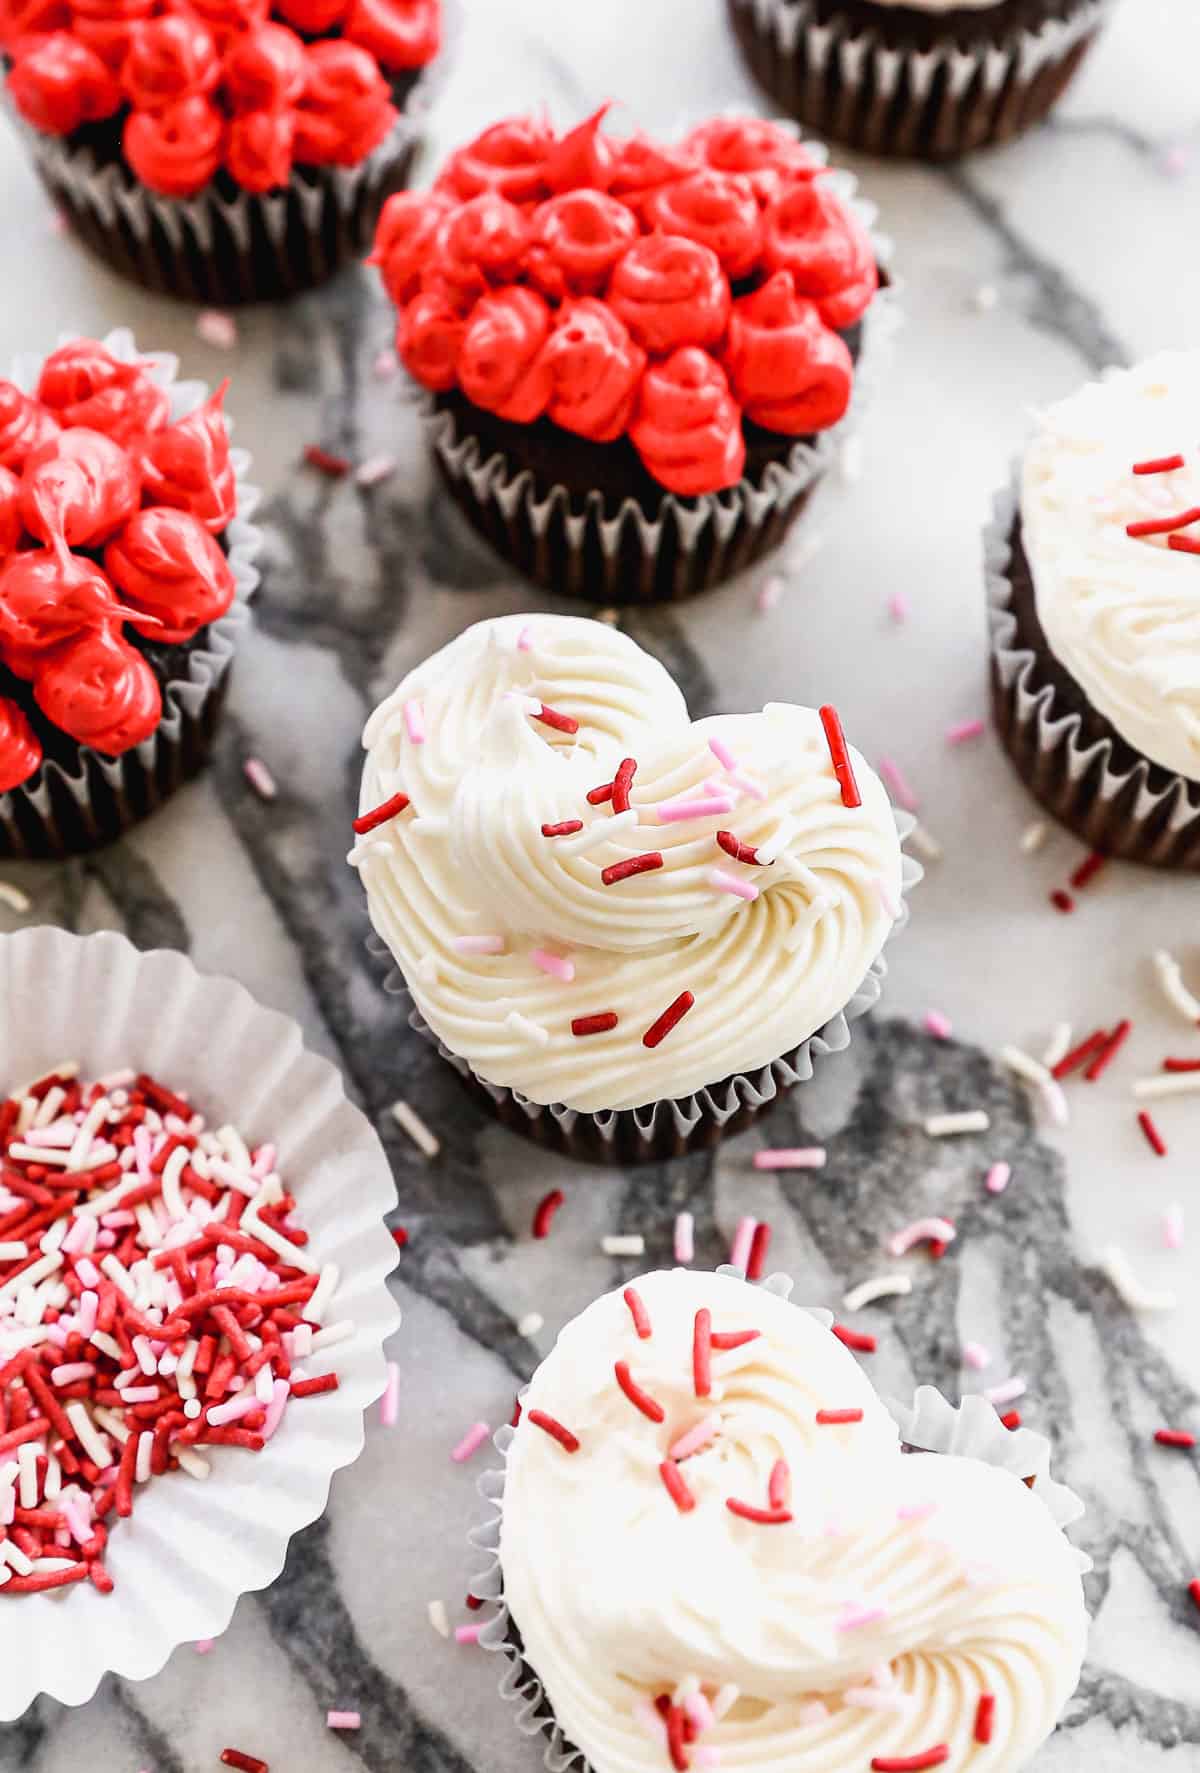 Kue mangkuk berbentuk hati putih dengan taburan Valentine, dikelilingi oleh lebih banyak kue mangkuk berbentuk hati berwarna merah dan putih.